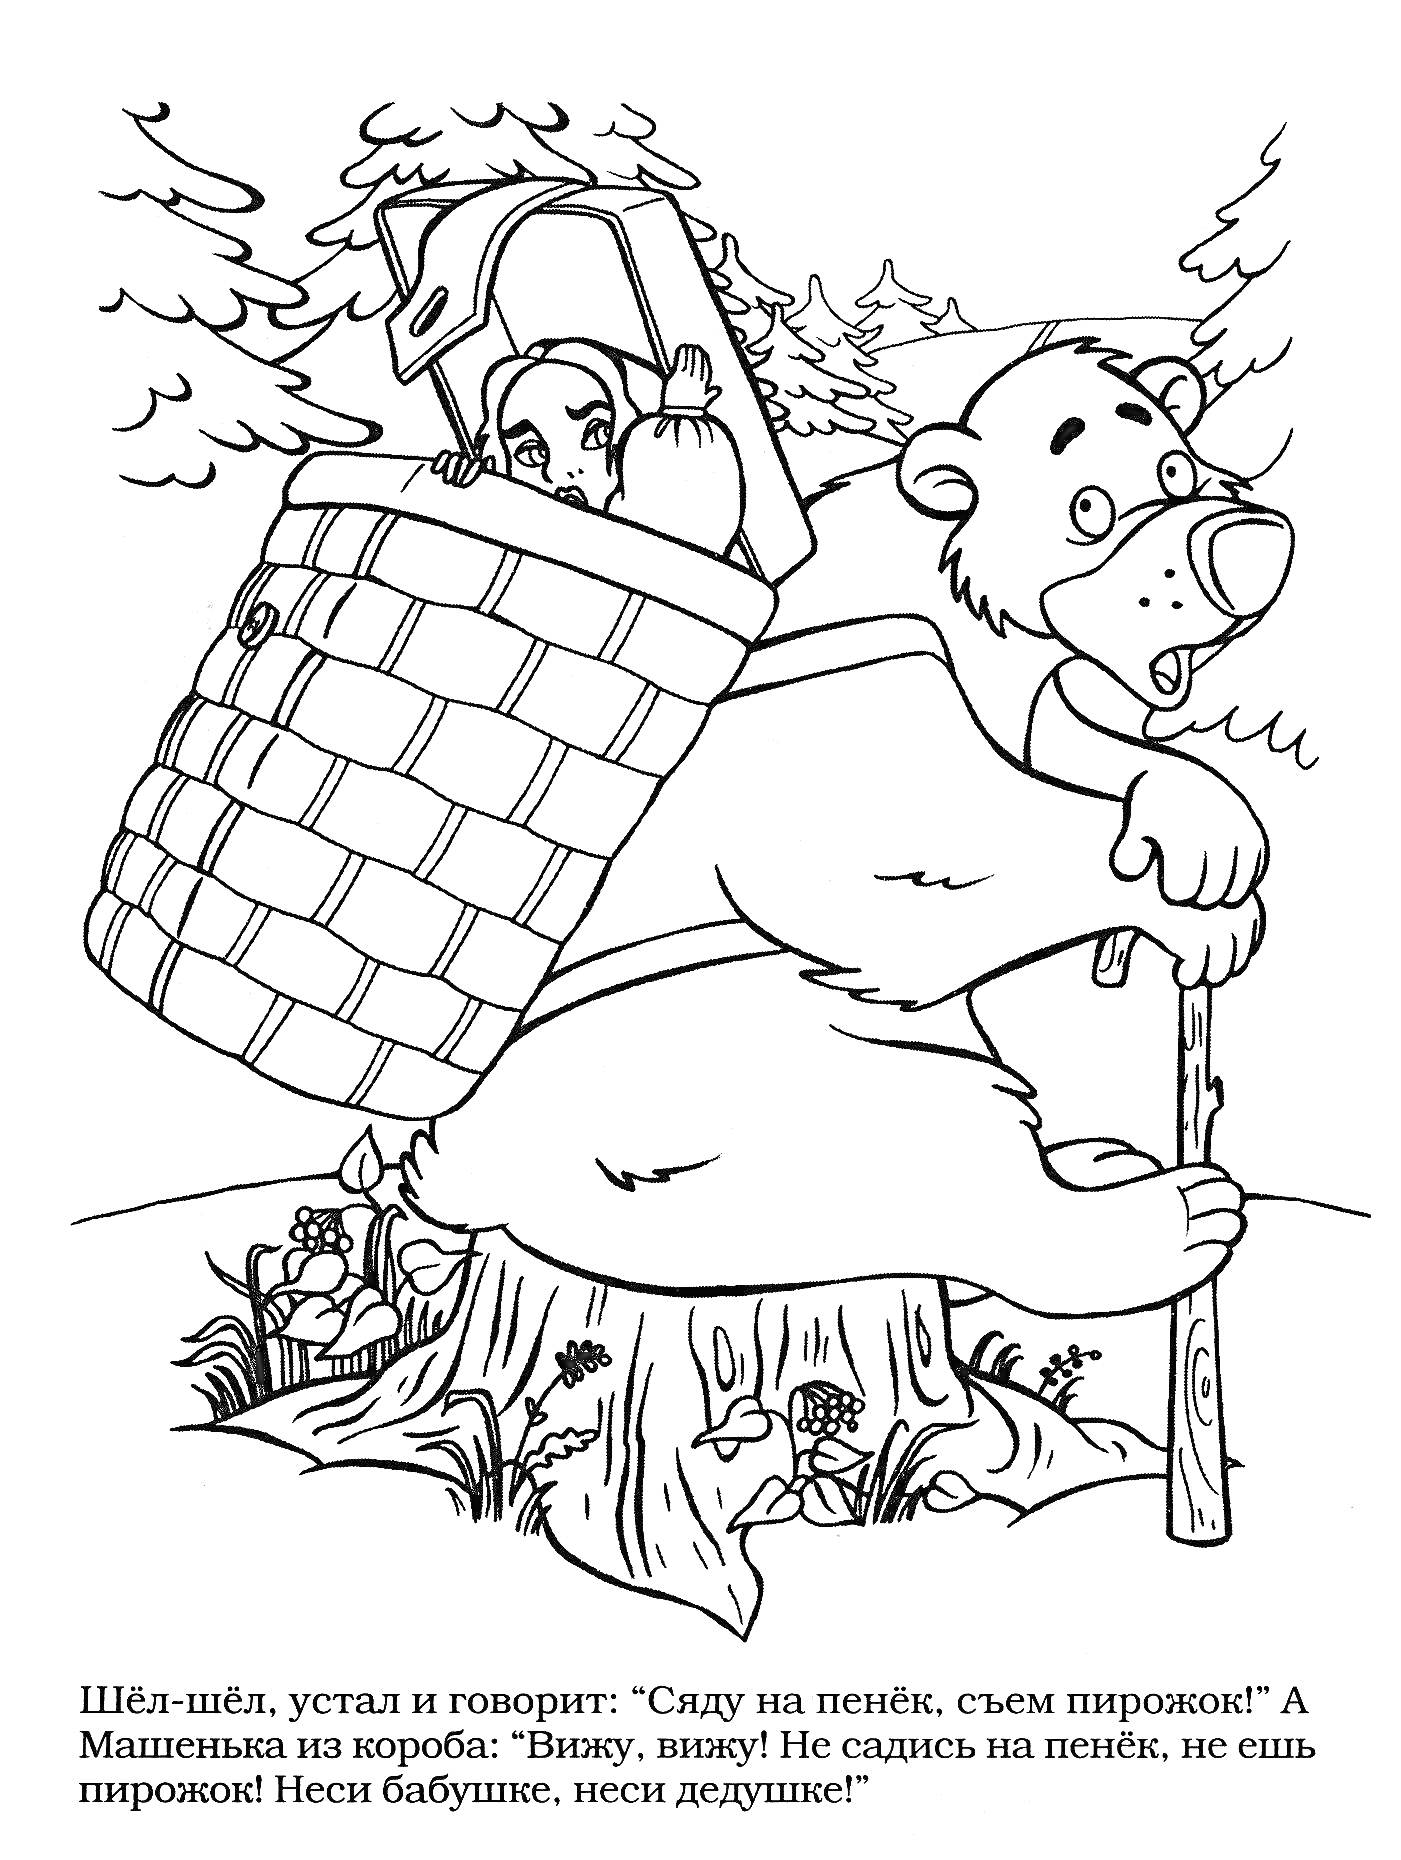 Маша и Медведь на пеньке - Маша в корзине у Медведя, несущего коробку с пирожками через лес